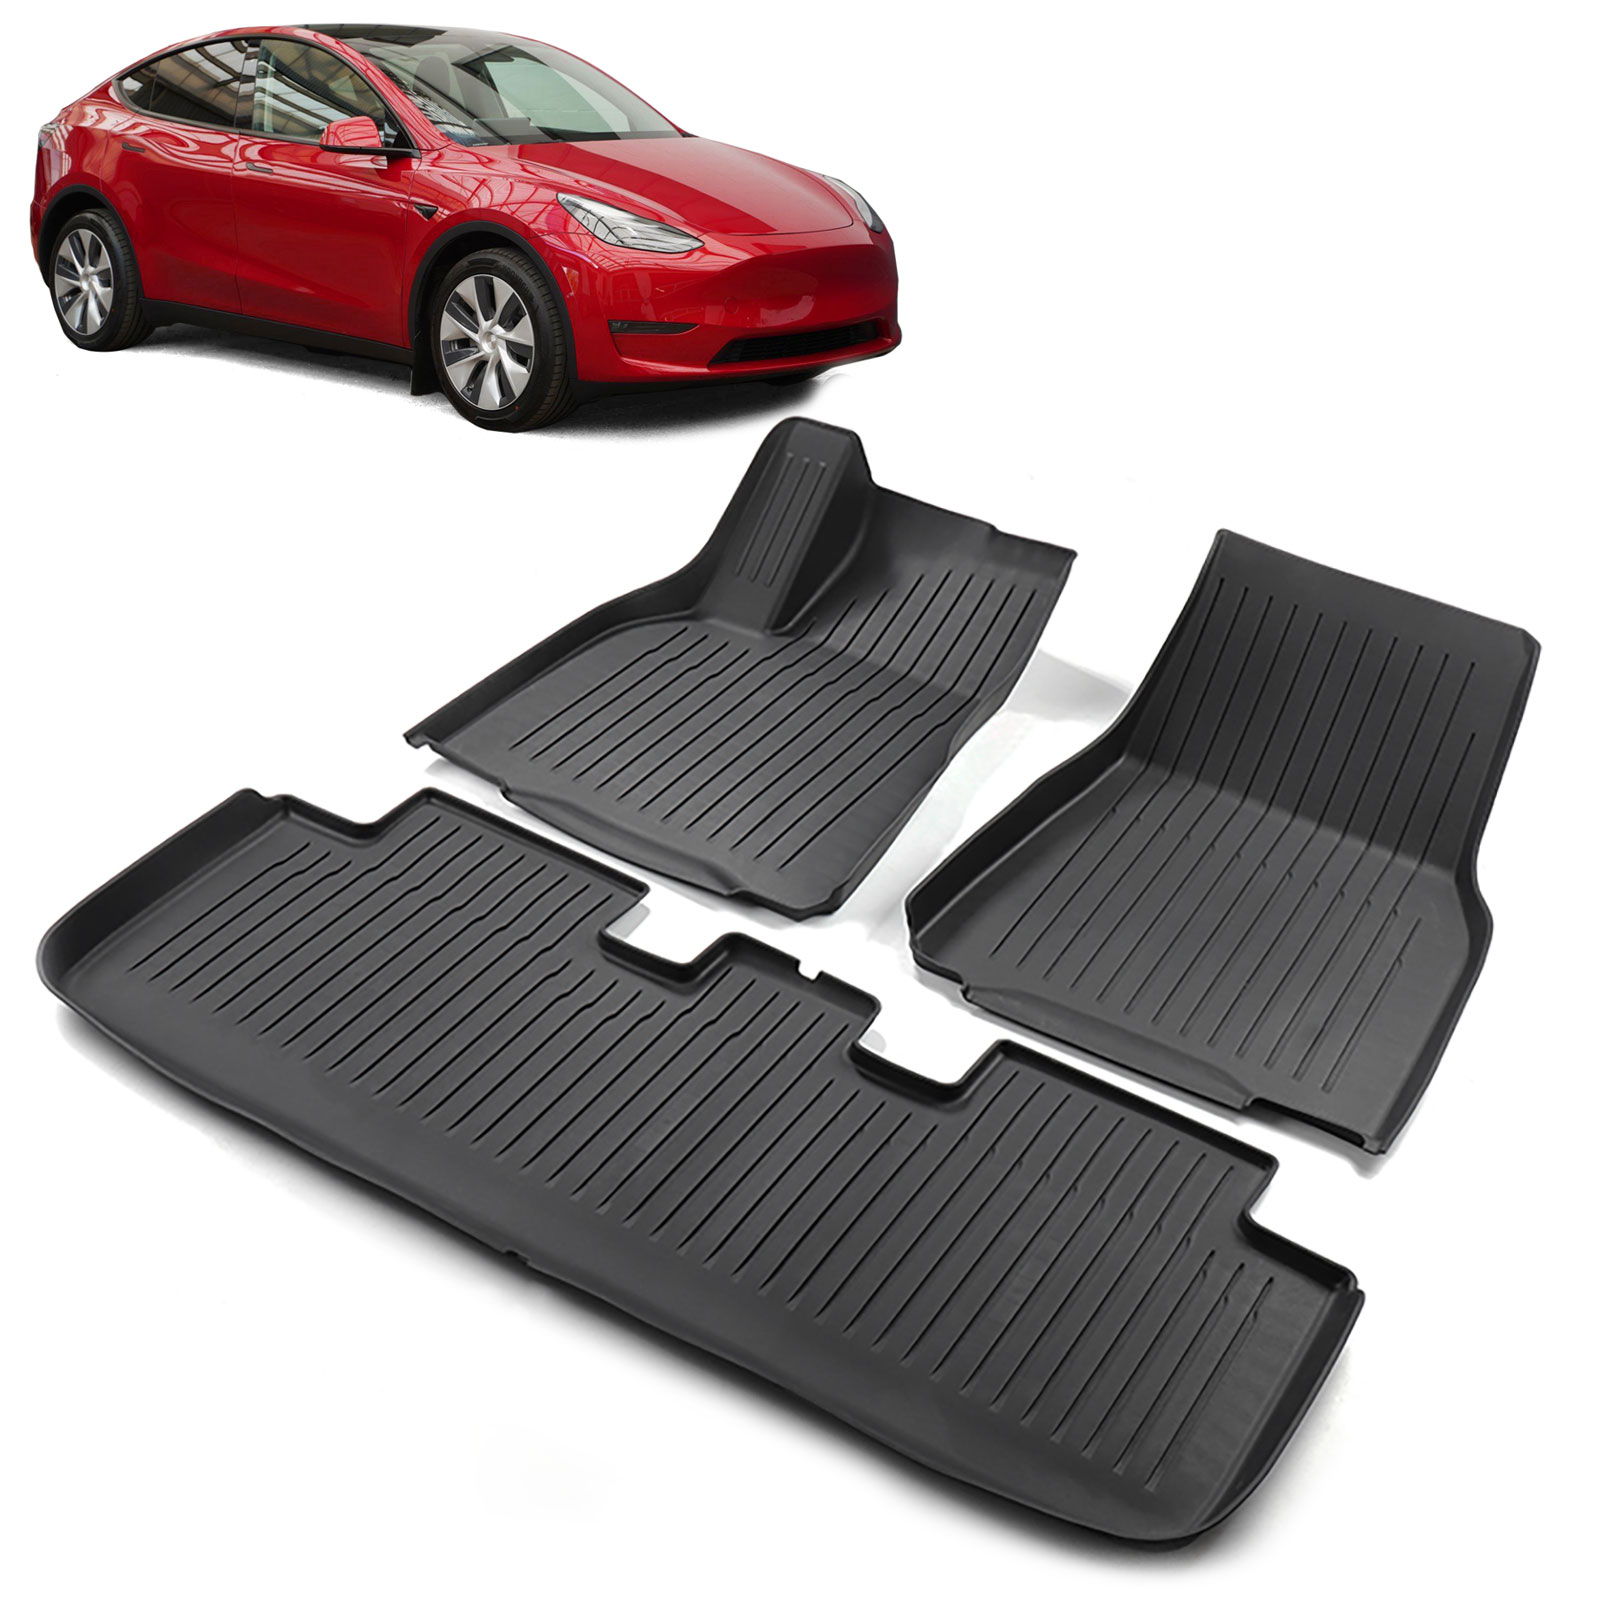 Tesla-Radabdeckung, Fußmatten, Aufbewahrungsbox, Kohlefaser-Zubehör.